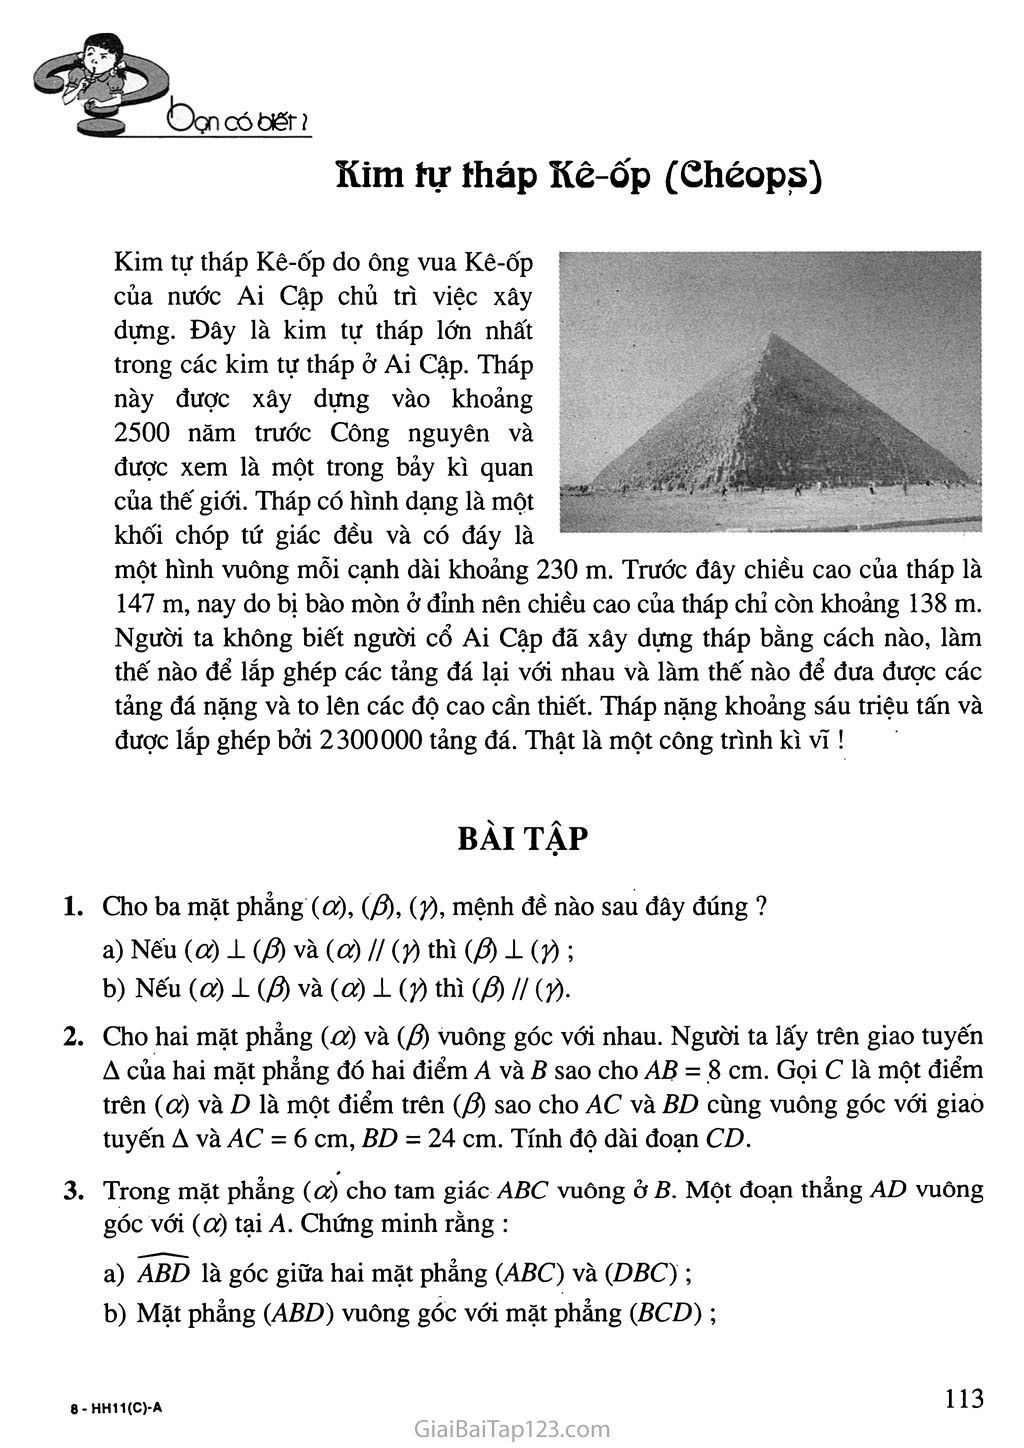 Bài 4. Hai mặt phẳng vuông góc - Bạn có biết? Kim tự tháp Kê - ốp trang 8